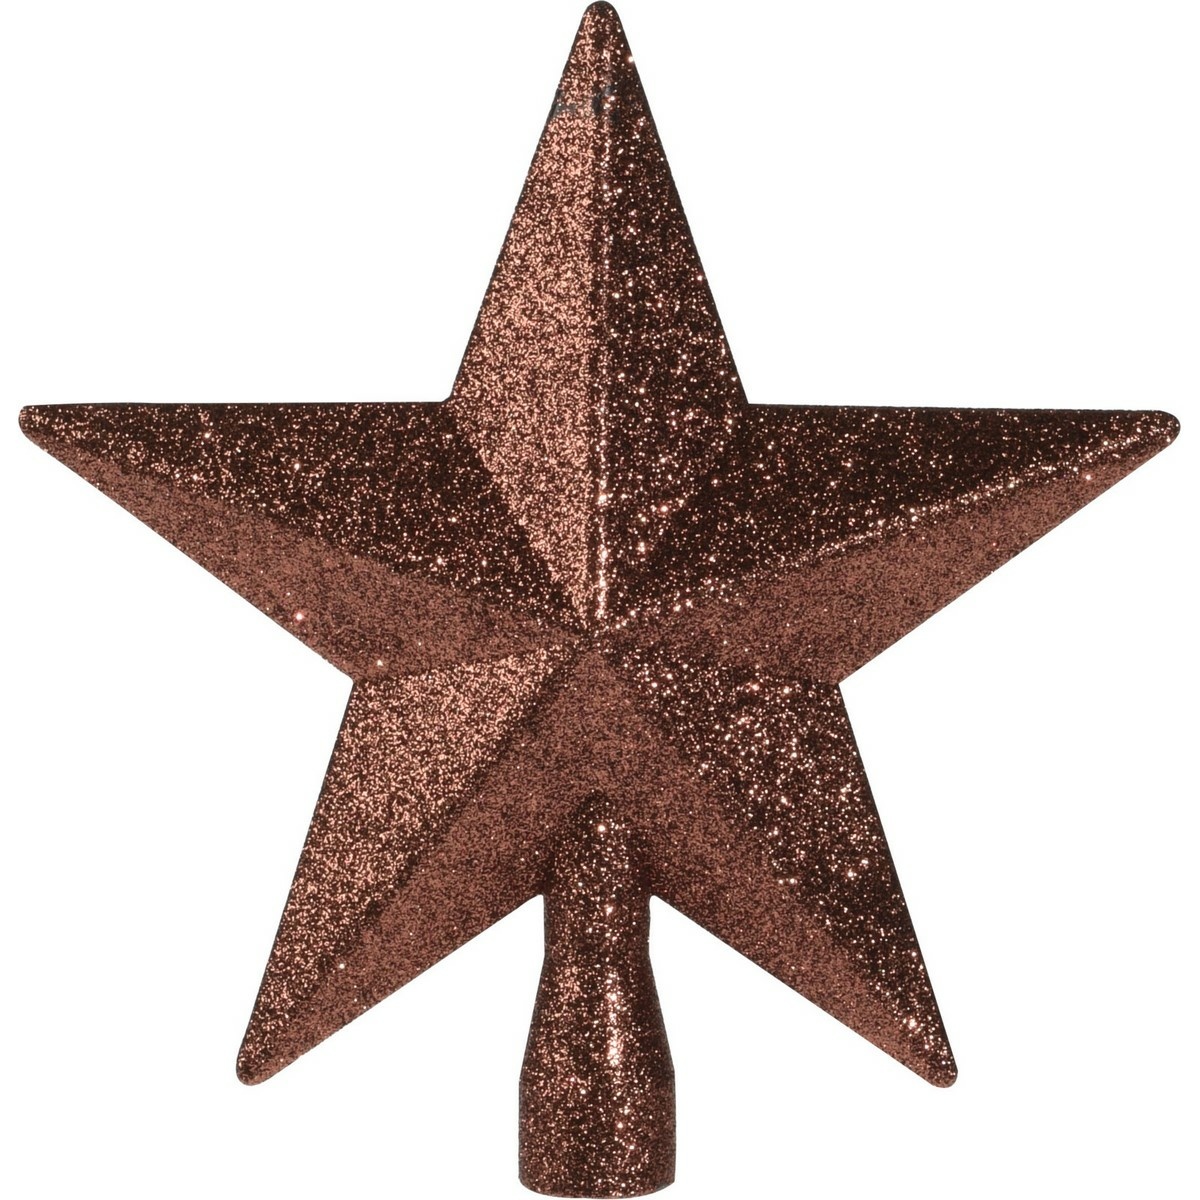 Vianočná špička na stromček Glitter star bronzová, 19 x 19 x 5 cm